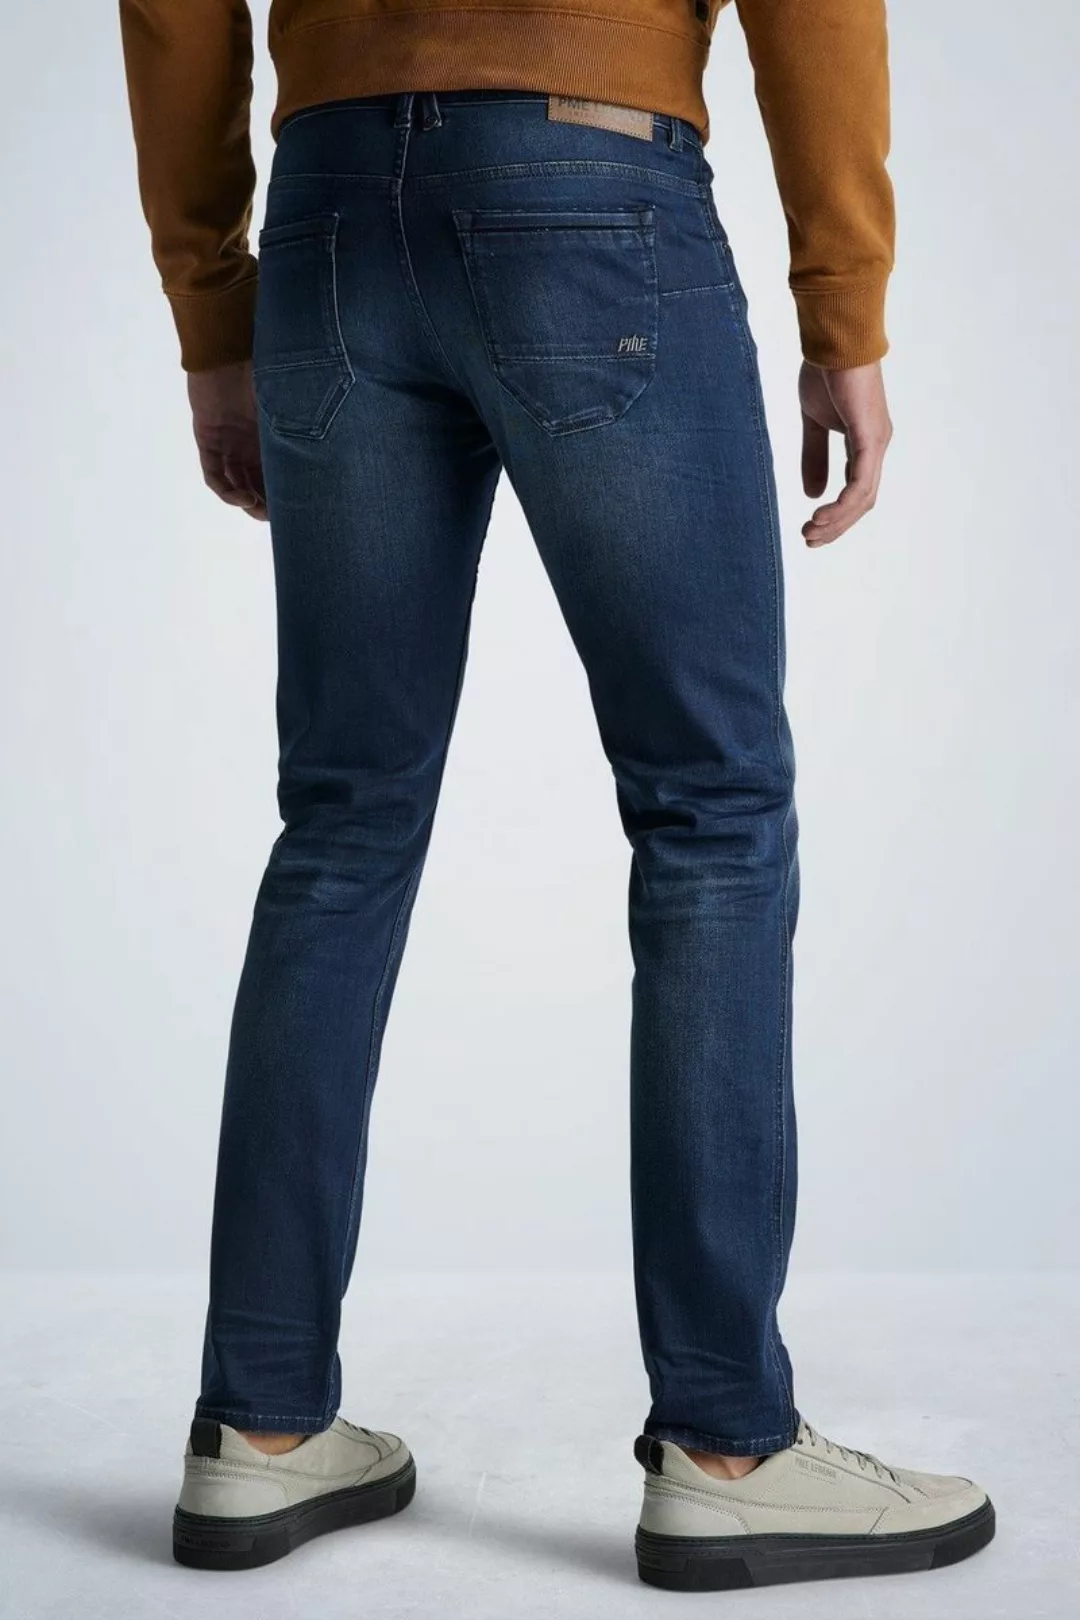 PME Legend Nightflight Jeans Dunkelblau NBW - Größe W 34 - L 32 günstig online kaufen